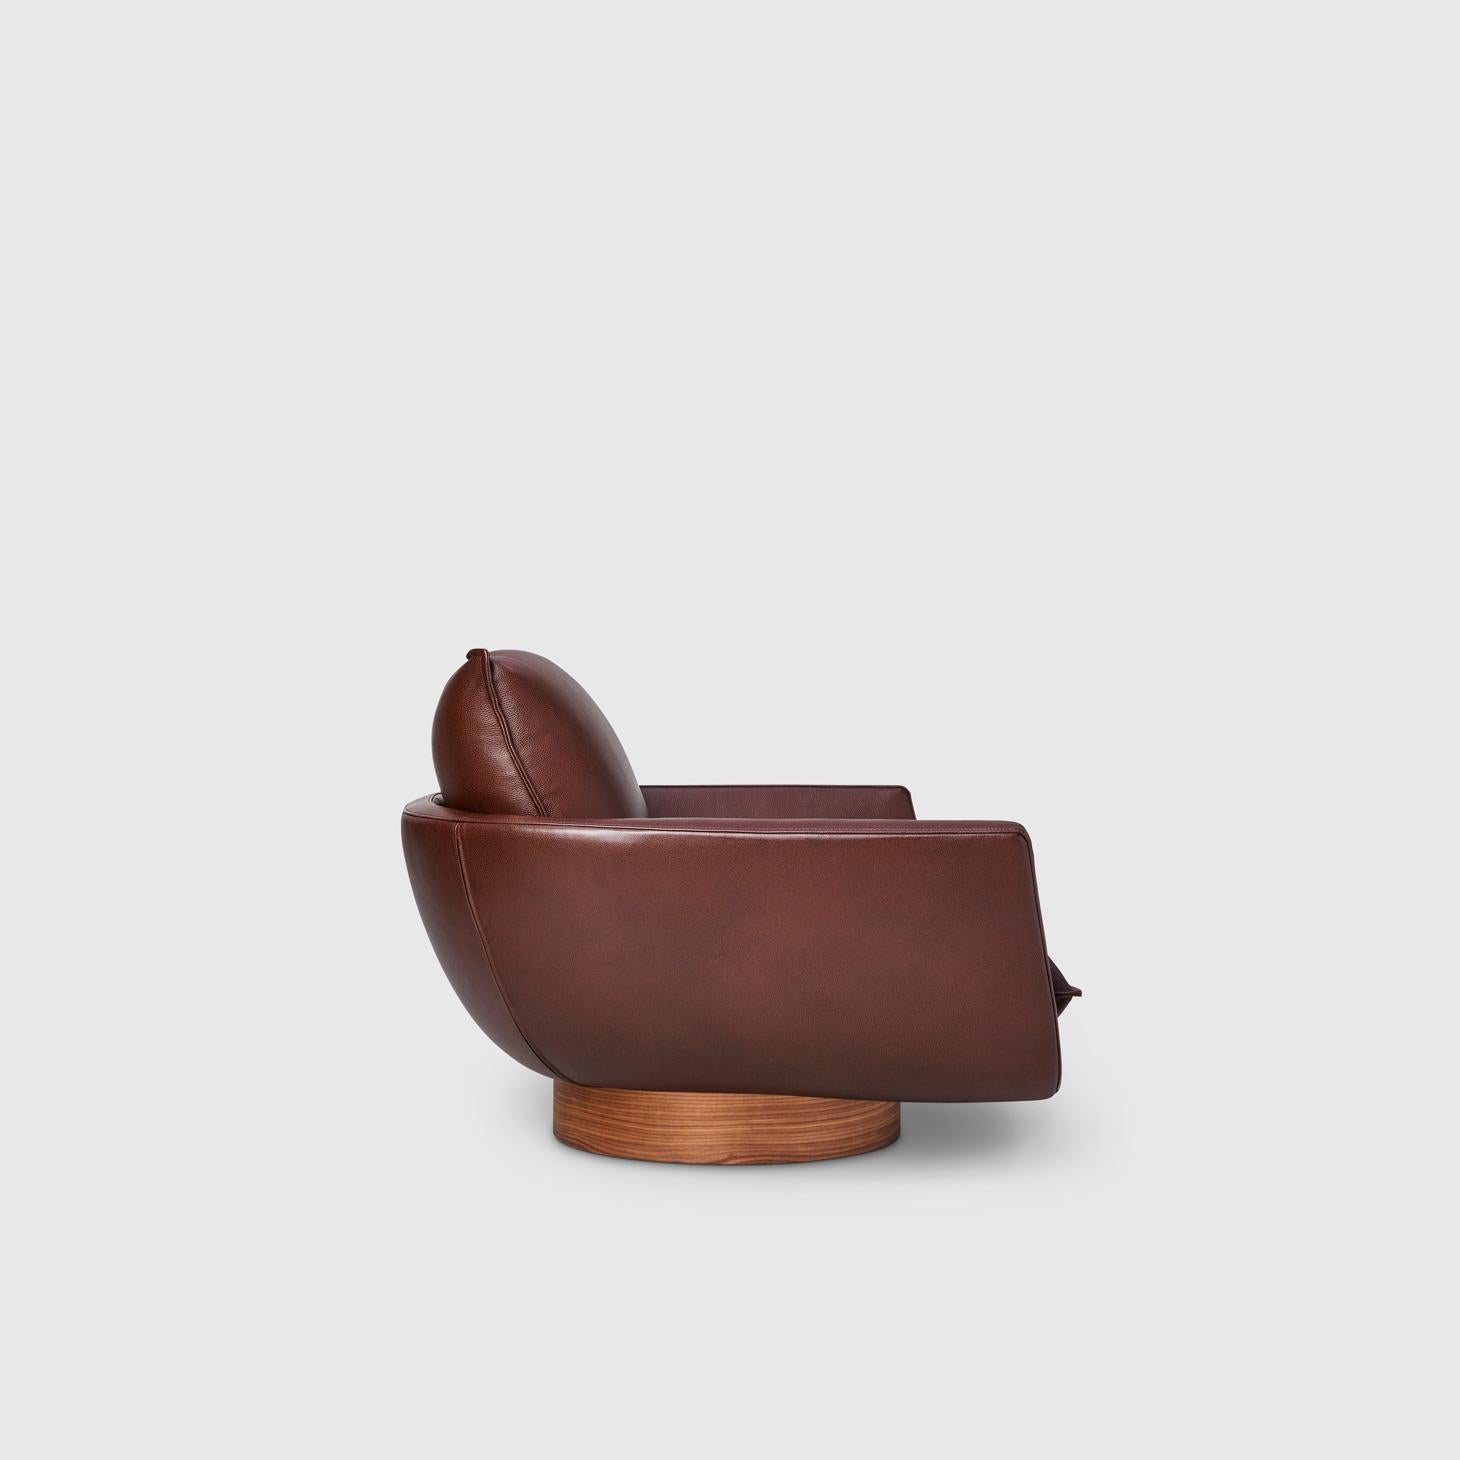 Italian Rua Ipanema Lounge Chair by Yabu Pushelberg in Rustic Nappa Leather